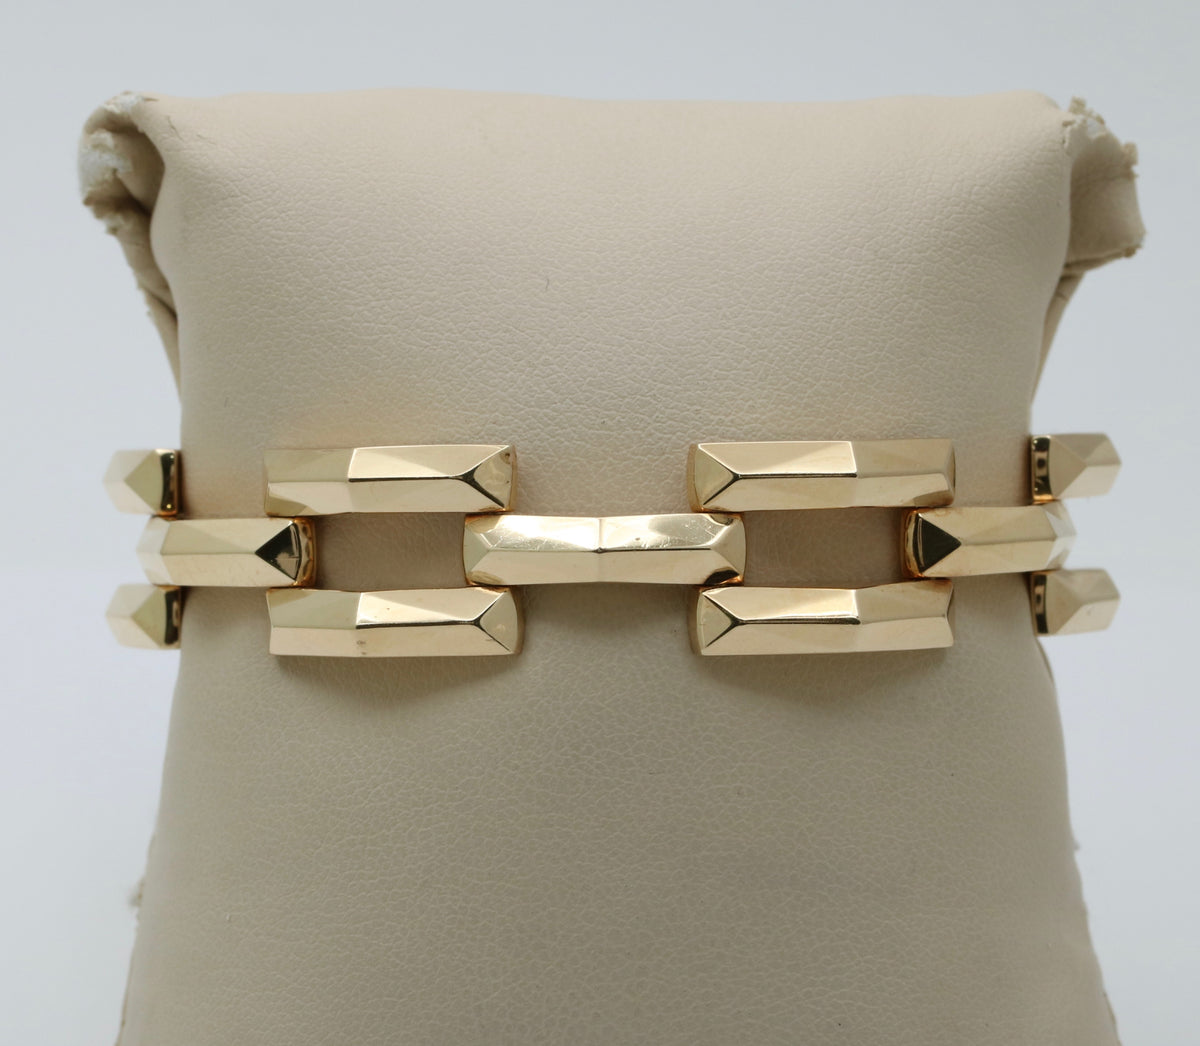 Vintage 14K Gold Faceted Tank Bracelet, 7” Long